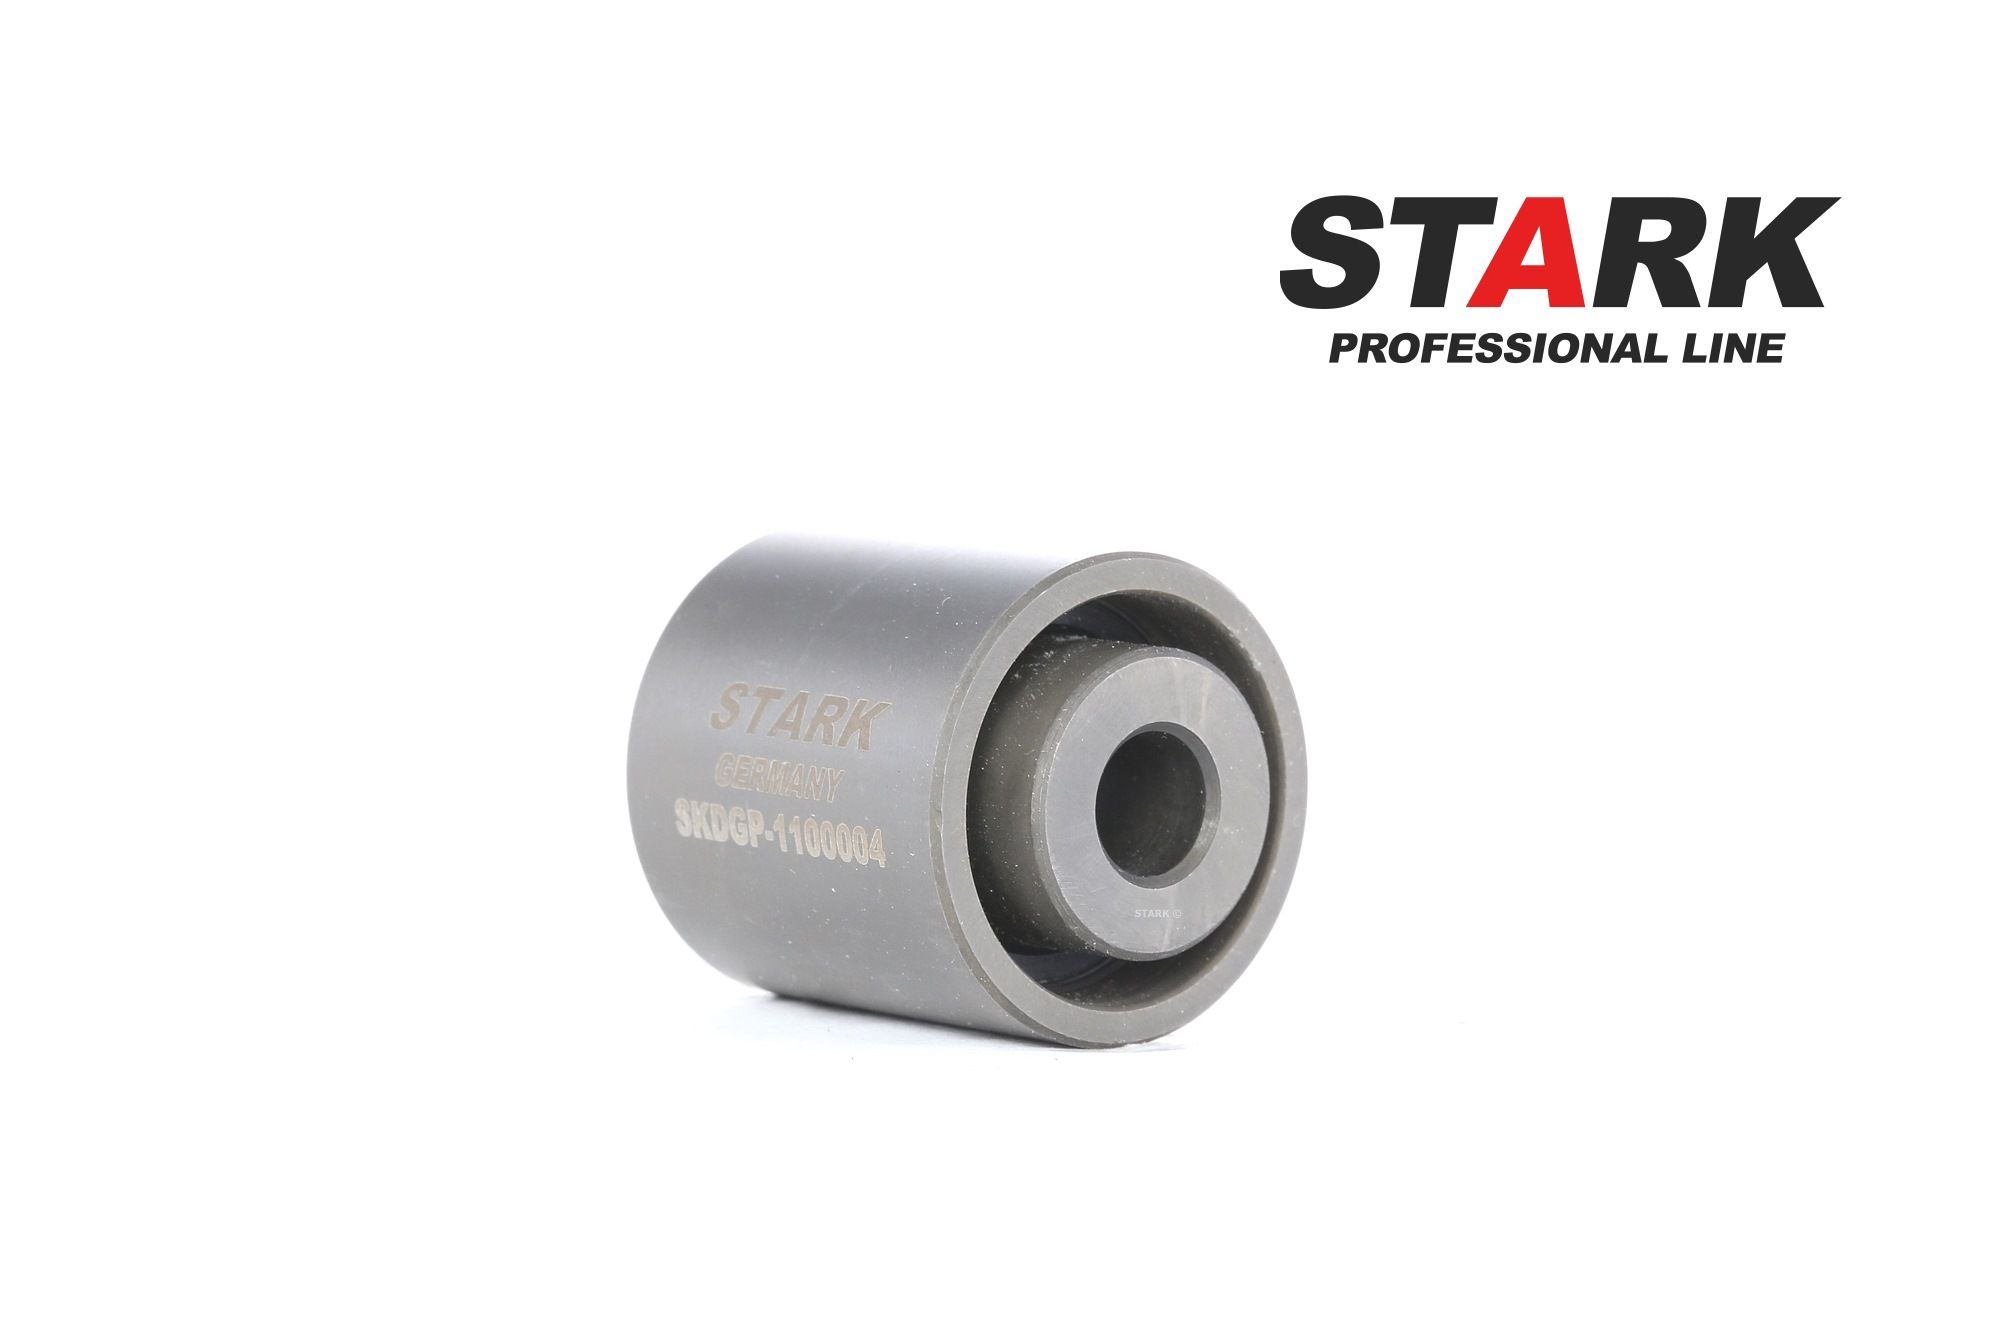 STARK SKDGP-1100004 Timing belt deflection pulley